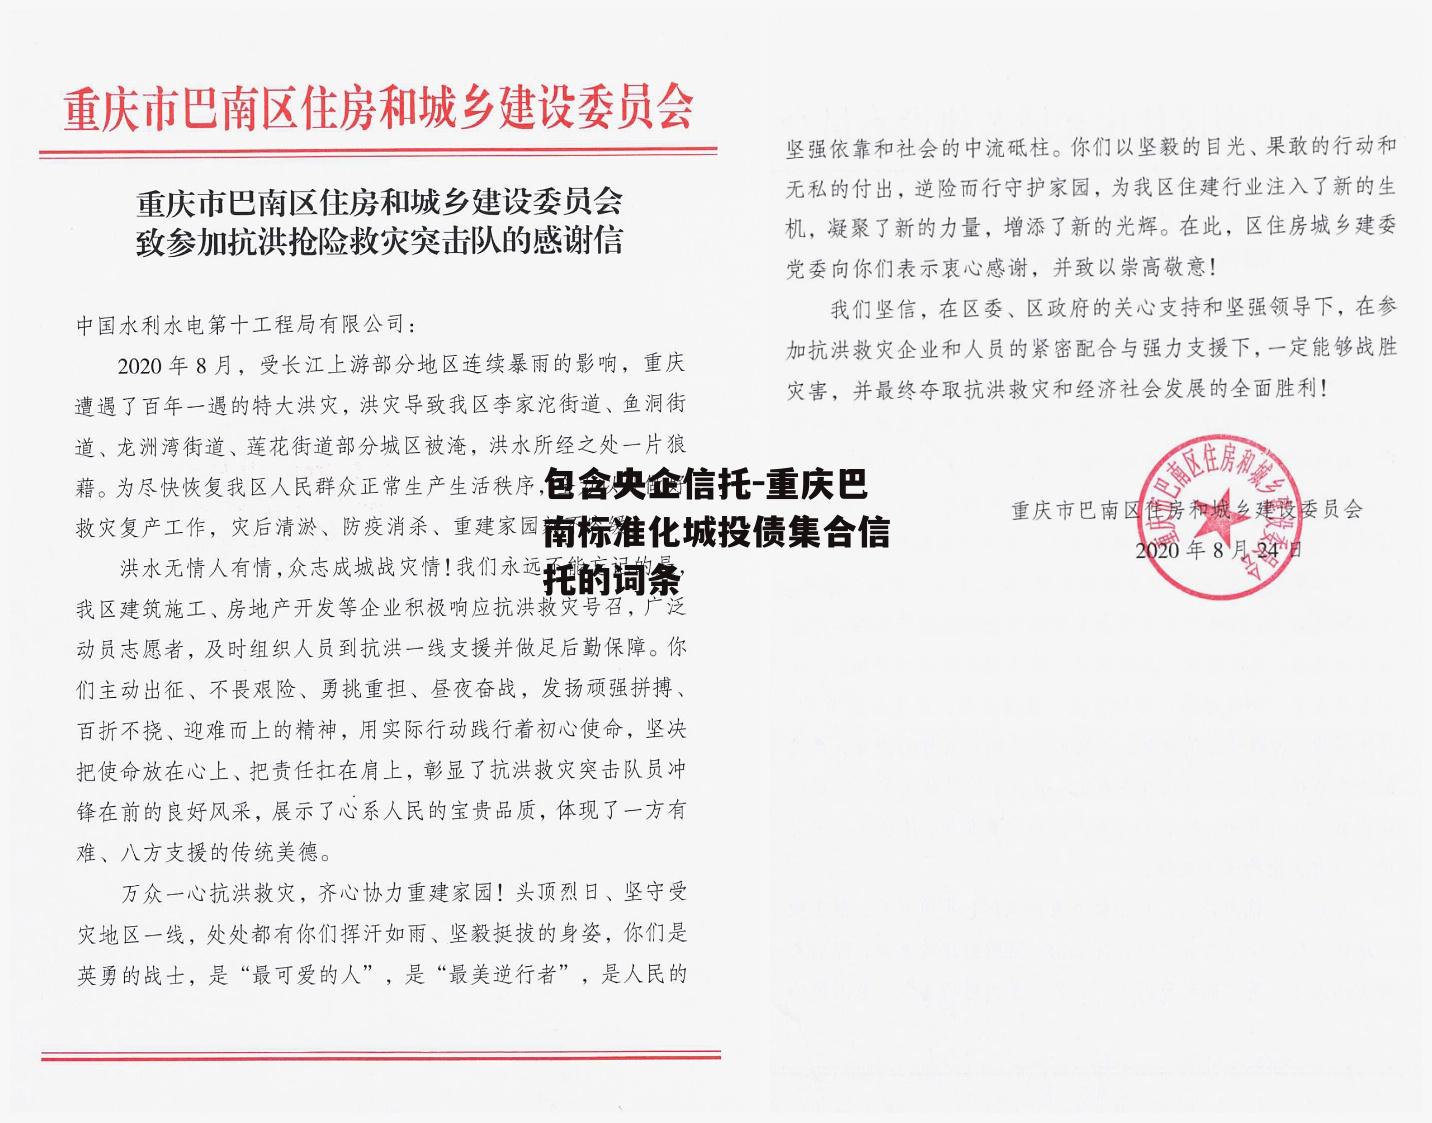 包含央企信托-重庆巴南标准化城投债集合信托的词条